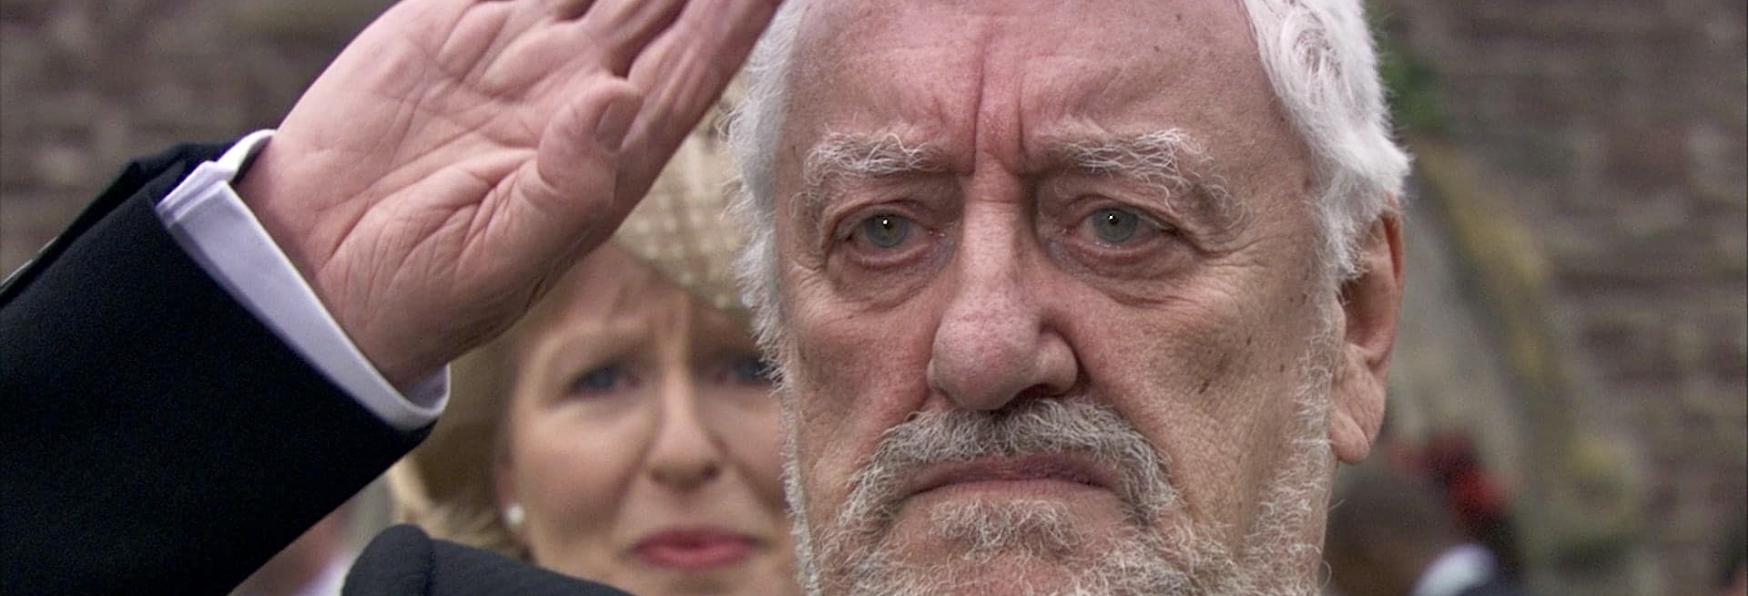 Doctor Who: Morto a 93 anni Bernard Cribbins, interprete del Nonno di Donna Noble